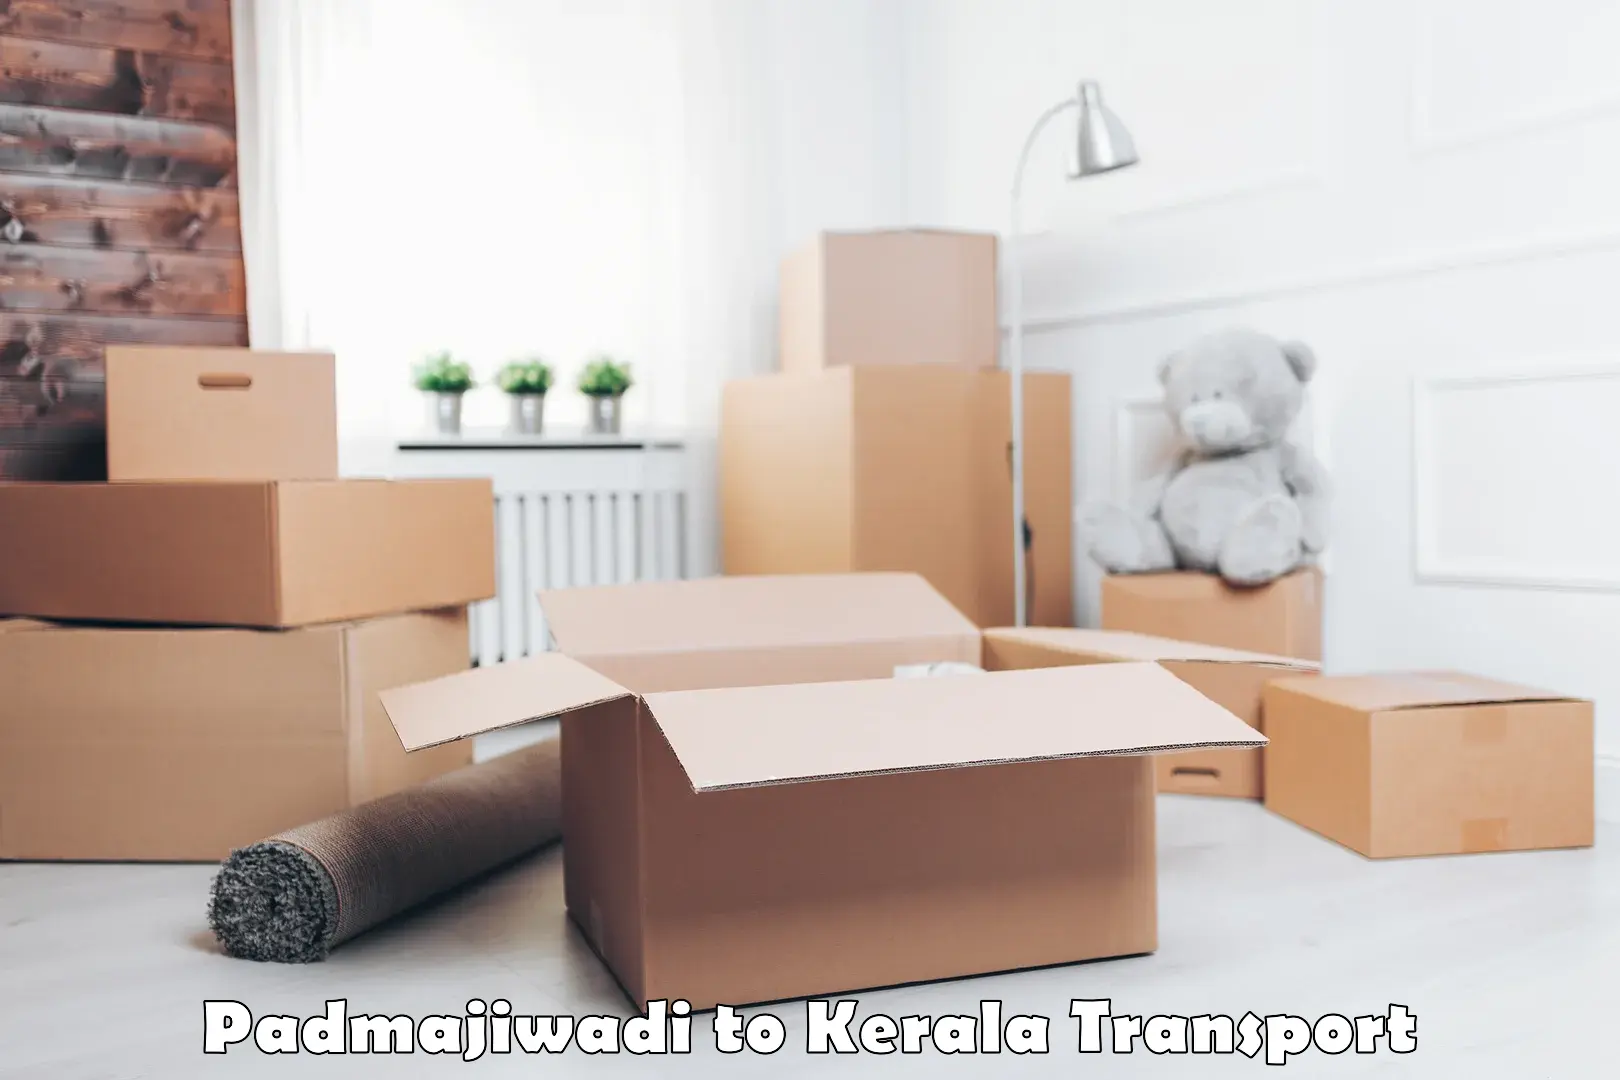 Online transport booking in Padmajiwadi to Taliparamba